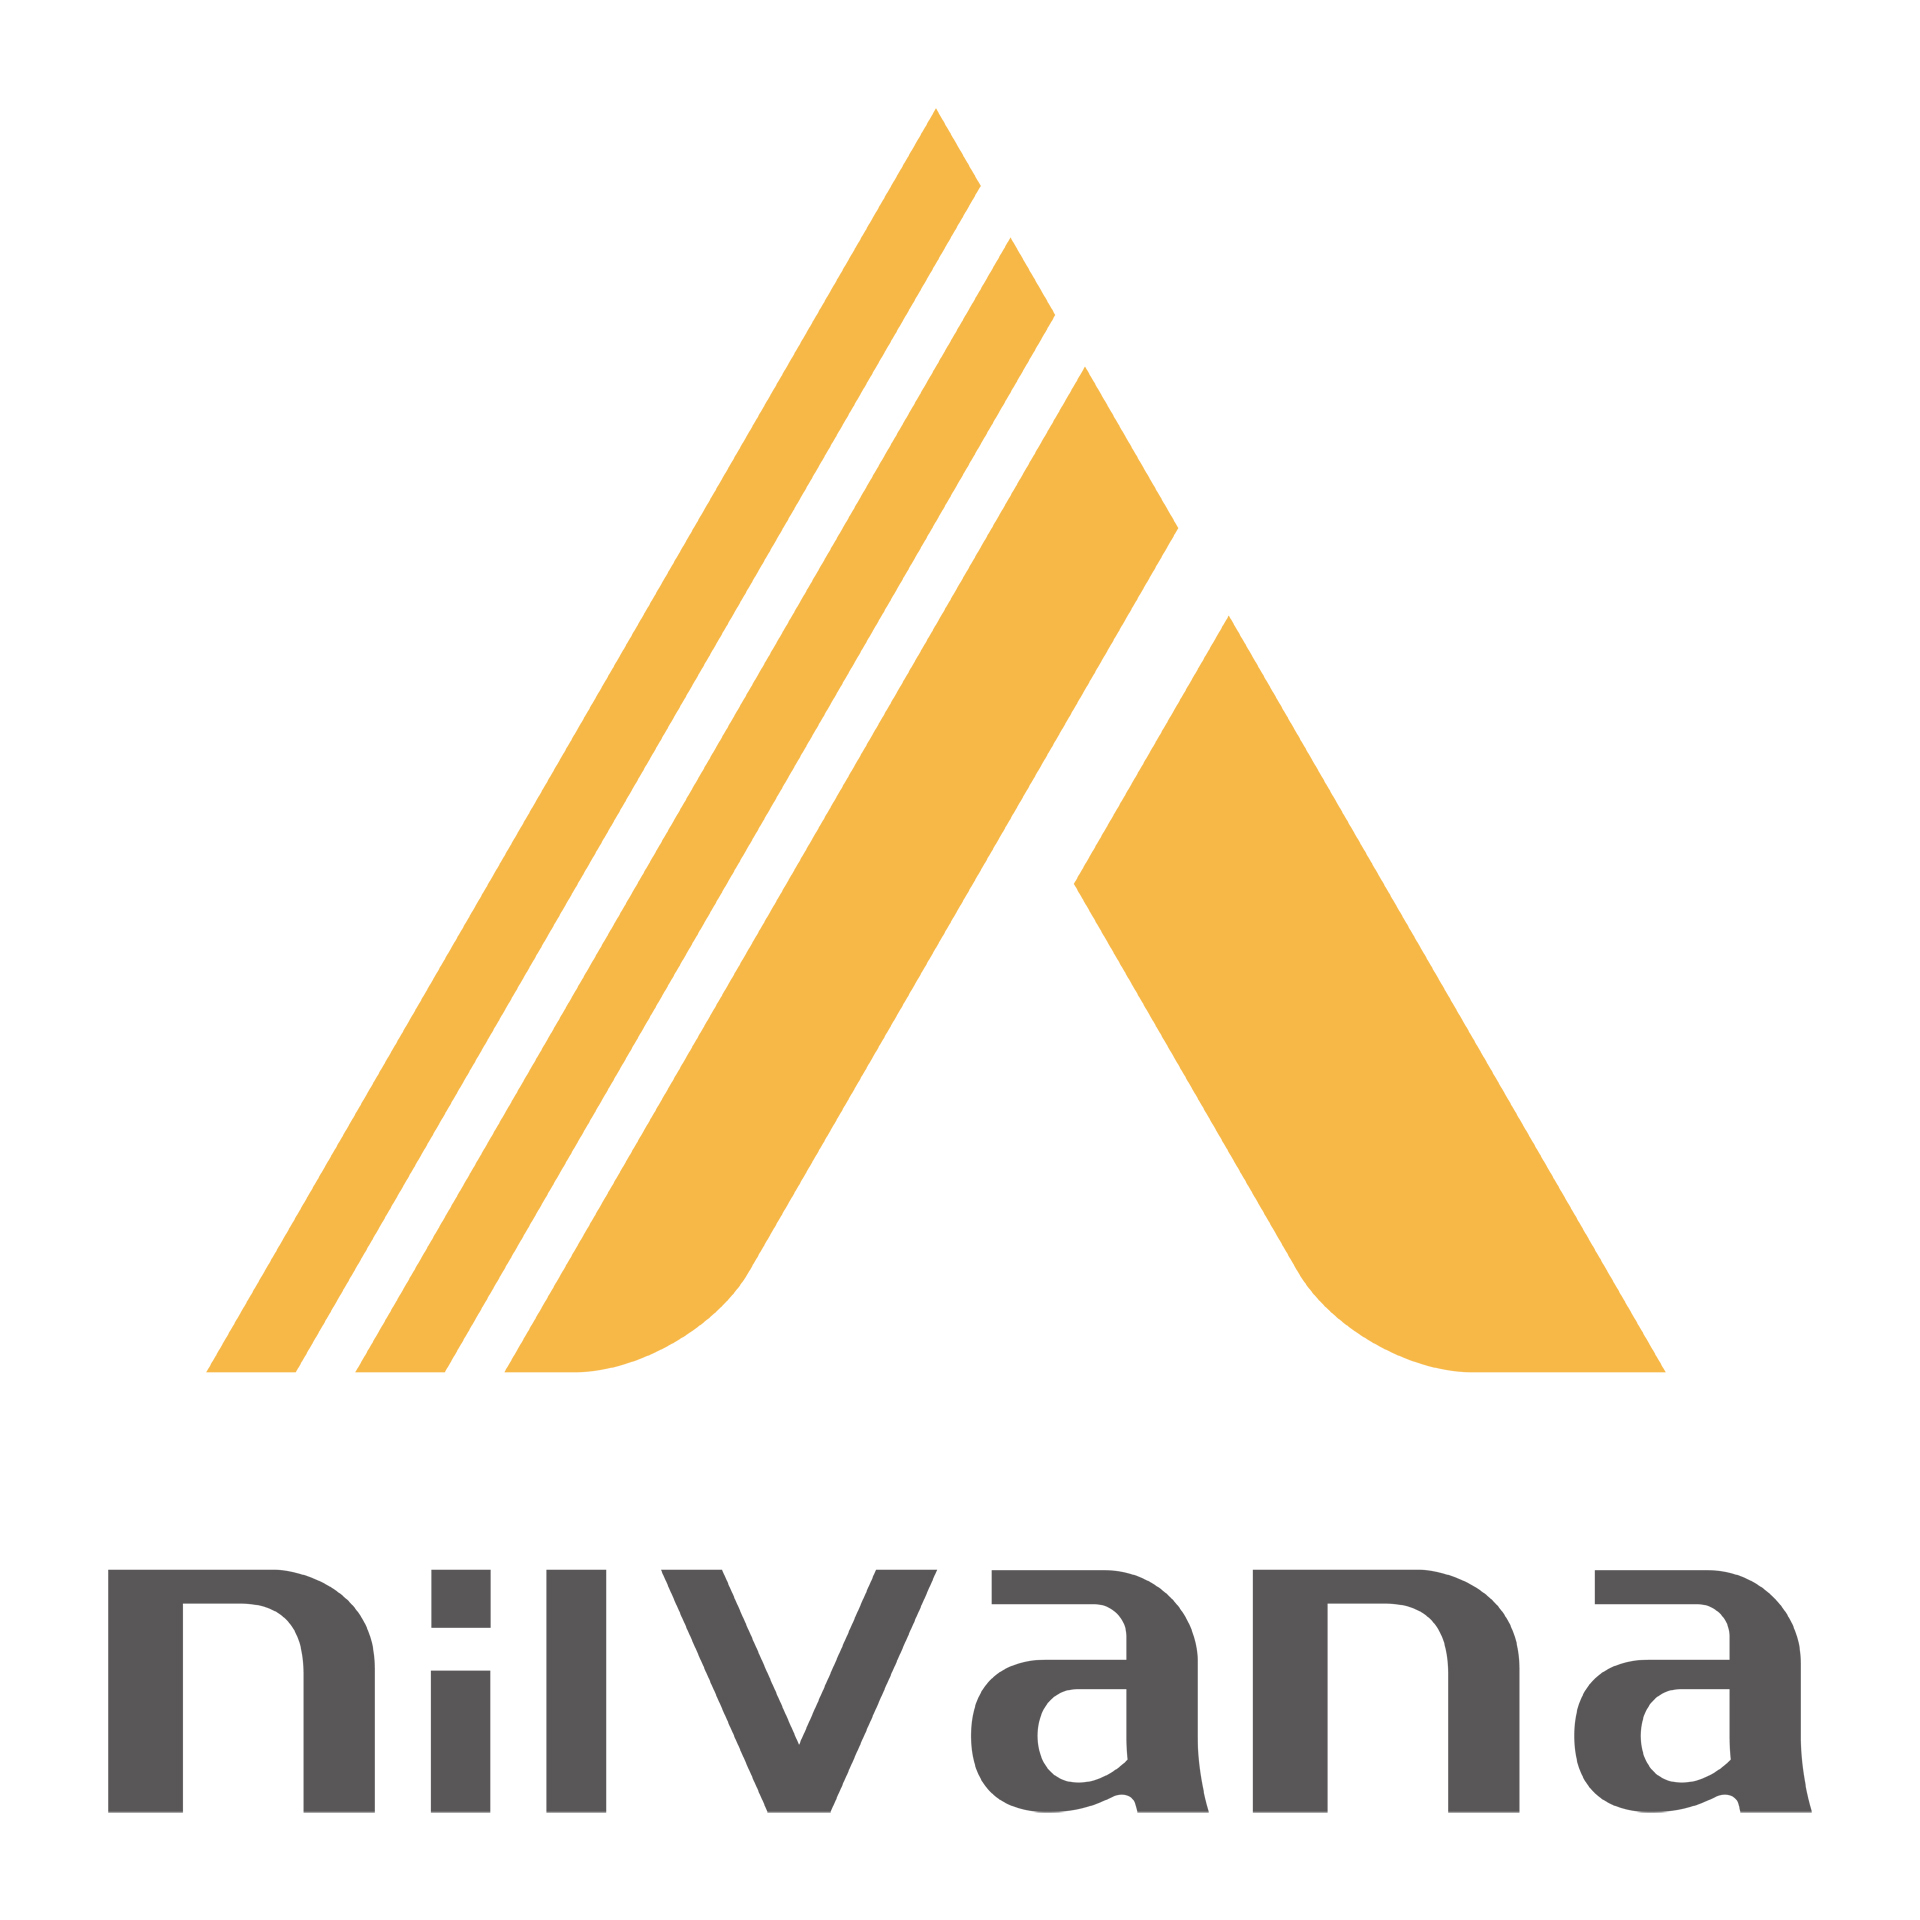 Giải pháp triển khai và phát triển hợp tác Nilvana AI cho Thị giác Máy tính